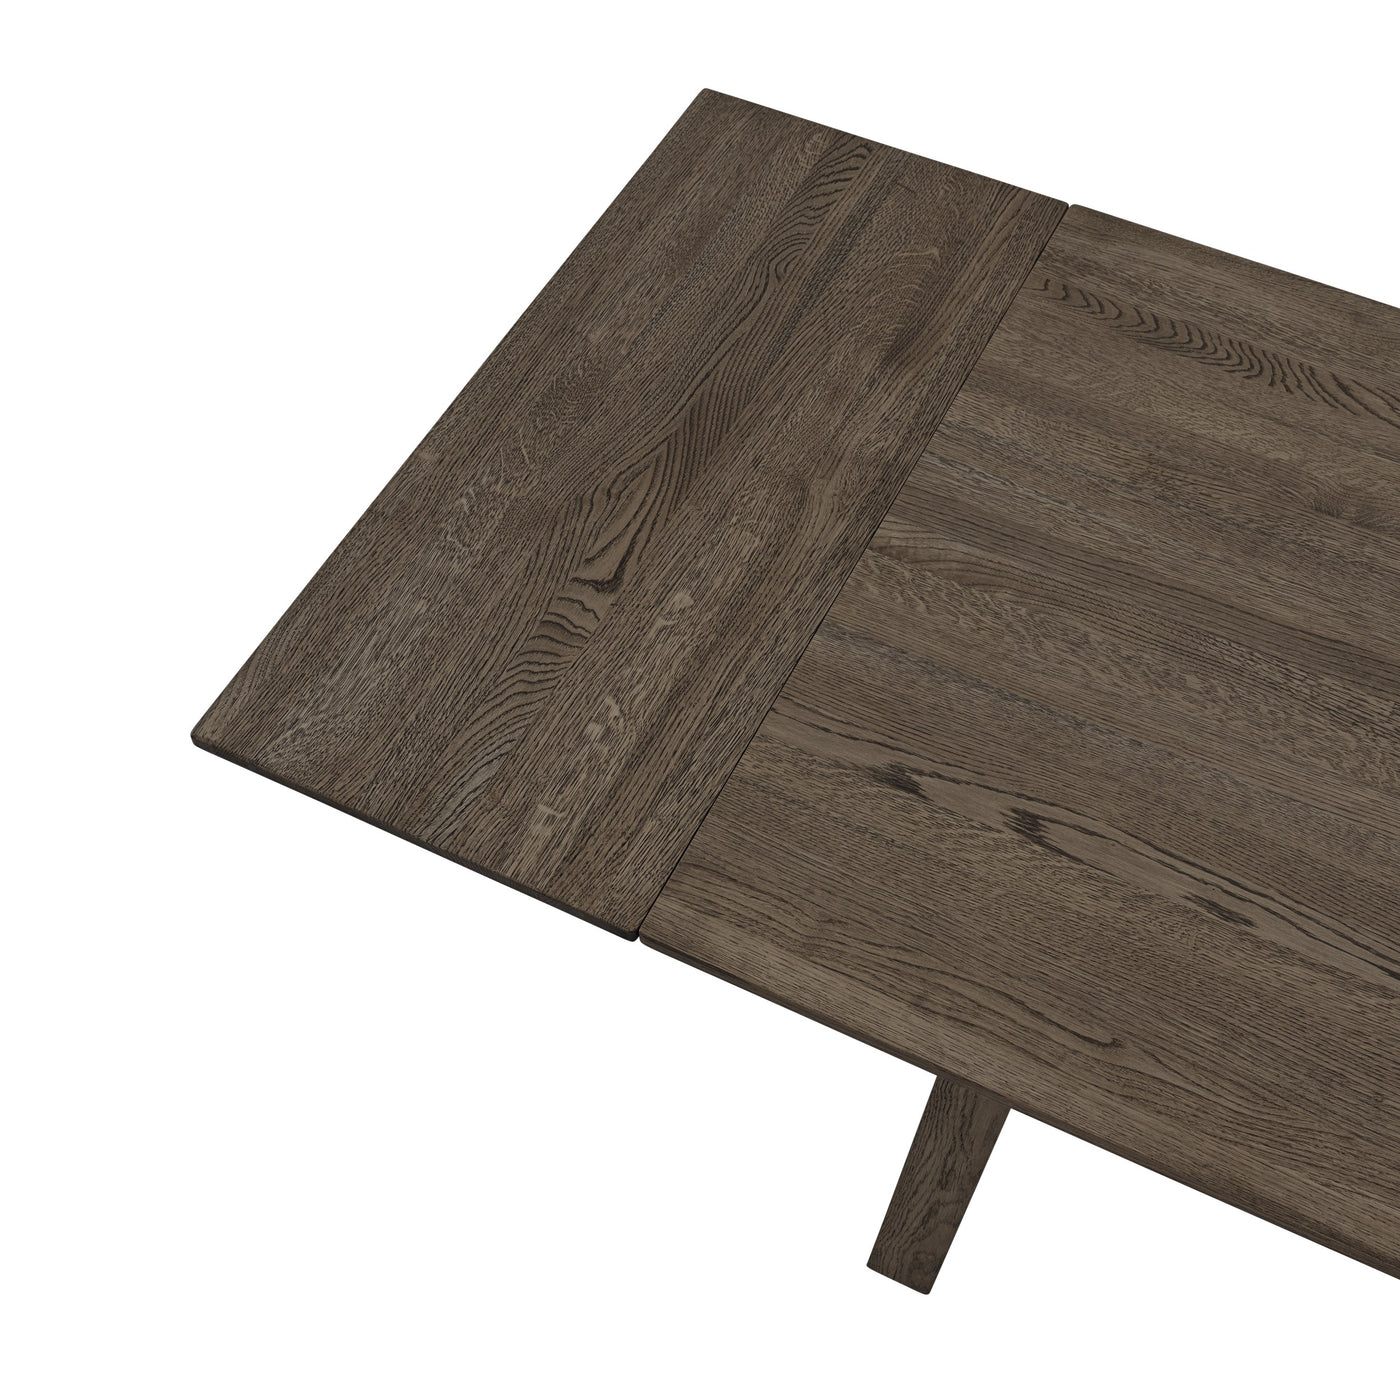 Earnest Extendable Dining Table set of 2 extension leaves dark oiled oak #colour_dark-oiled-oak